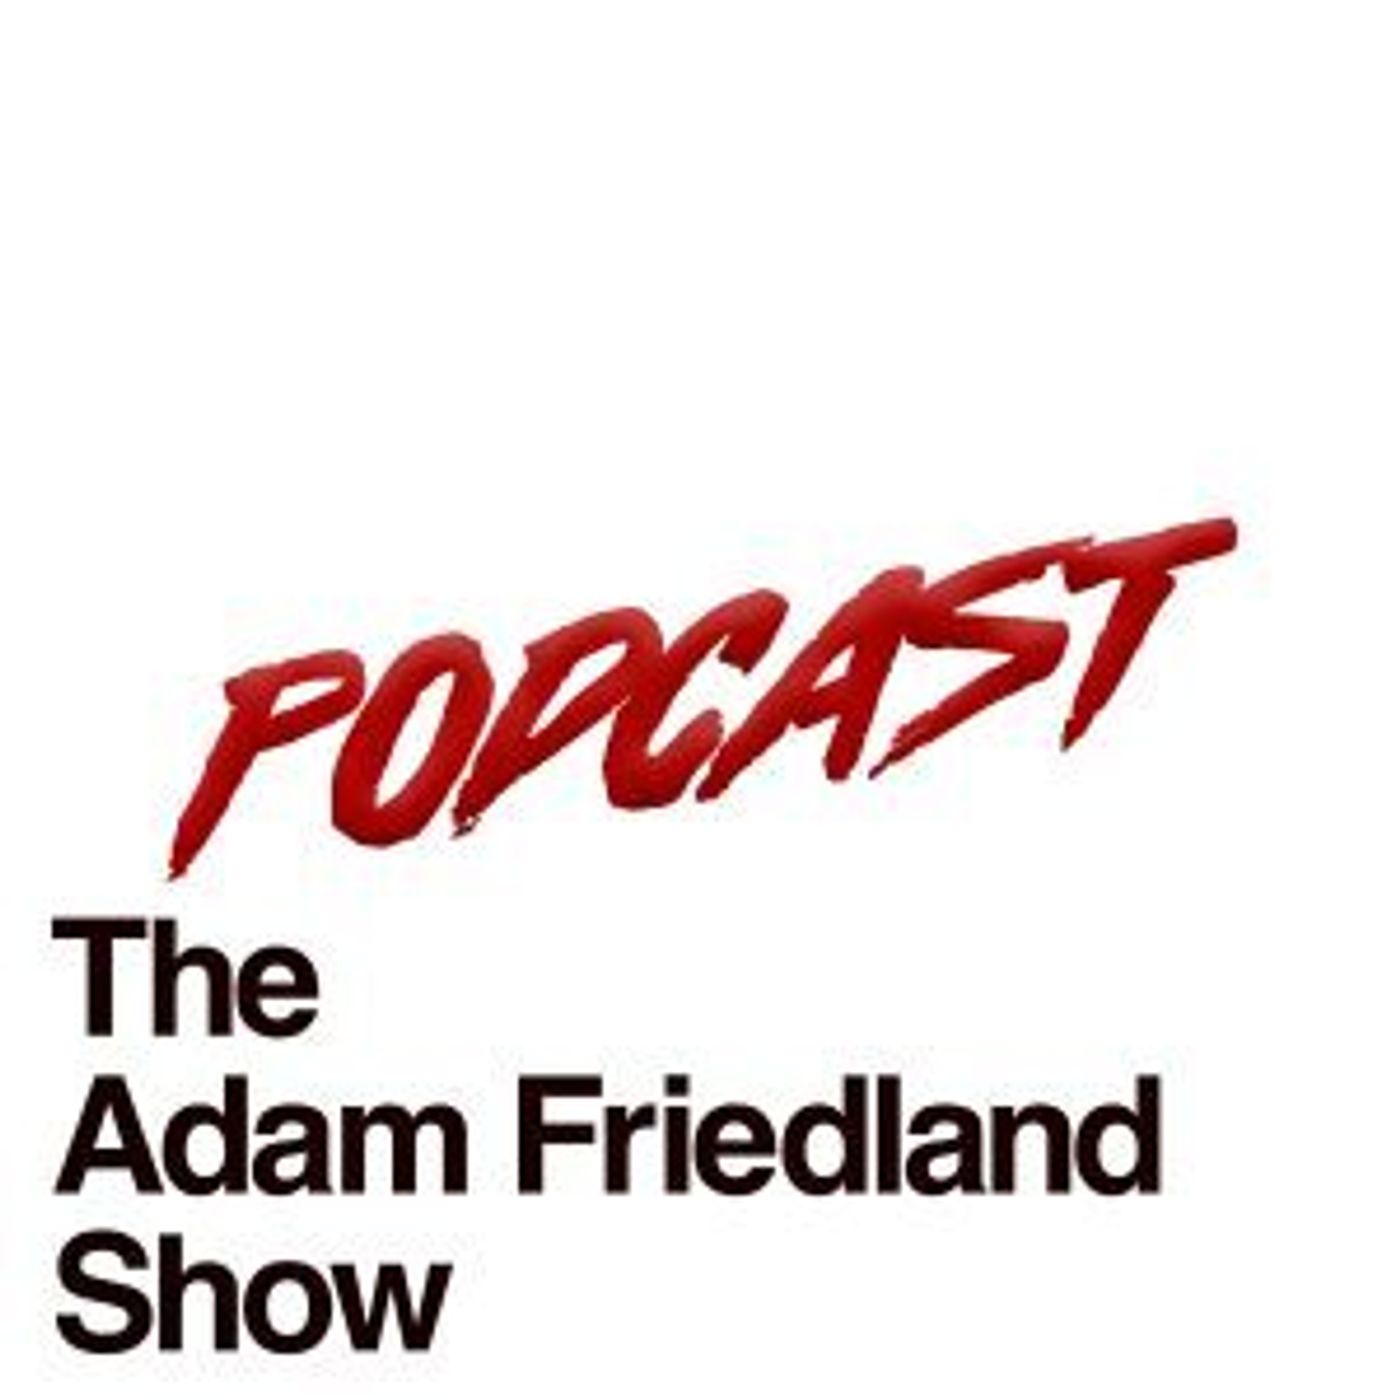 The Adam Friedland Show Retro Style Podcast – Episode 3